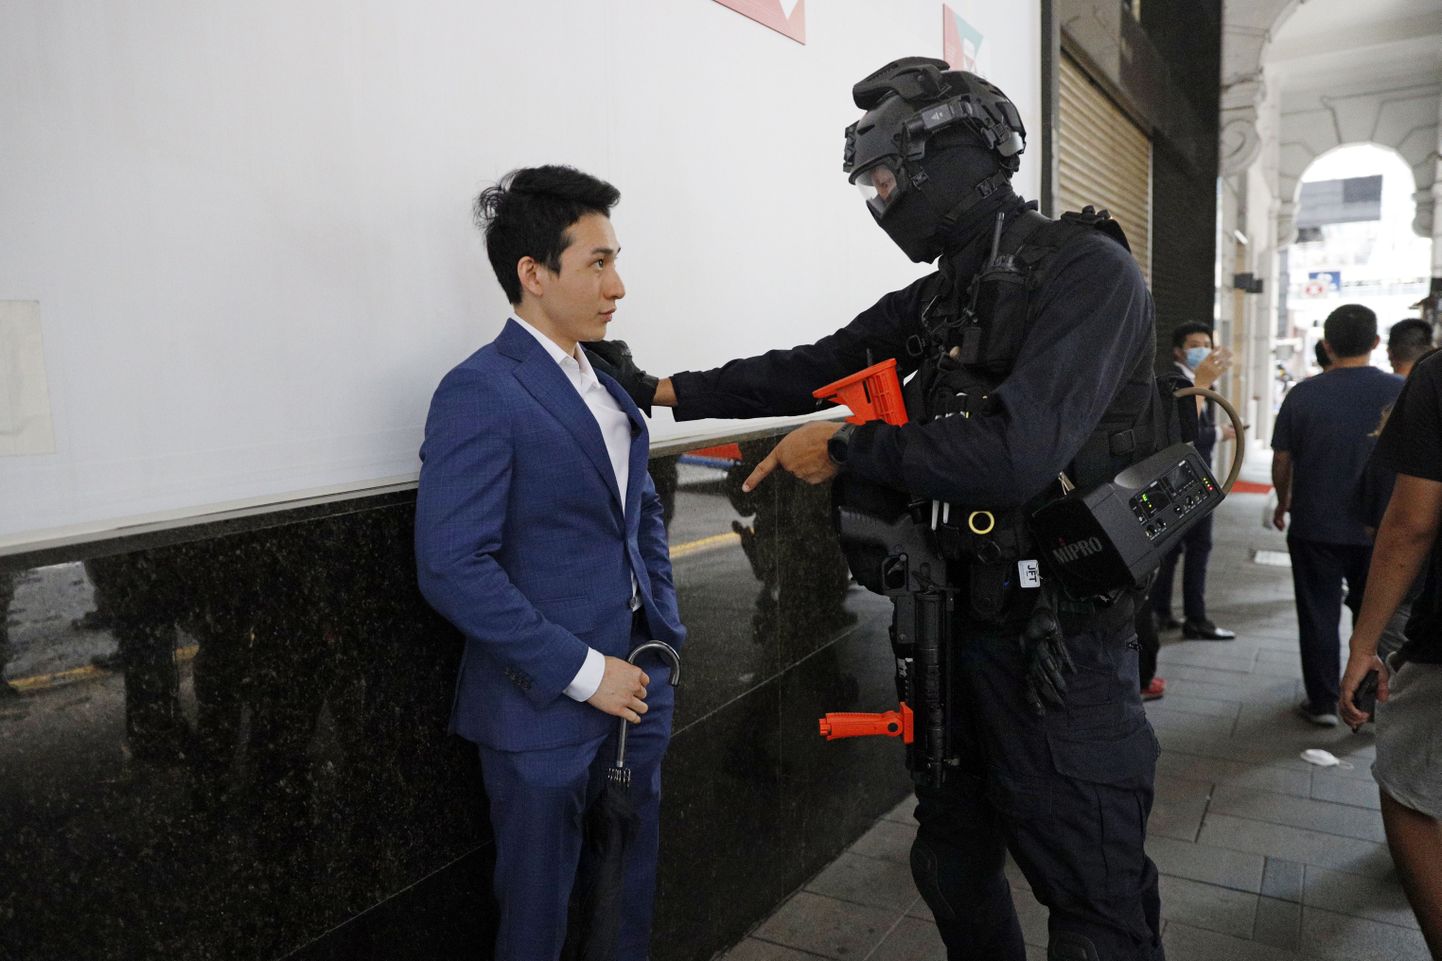 Hongkongi märulipolitseinik peatab kinni kesklinnas aset leidnud meeleavaldusel viibinud mehe. USA välisminister Mike Pompeo teavitas kongressi, et Trumpi valitsus ei pea enam Hongkongi Mandri-Hiinast autonoomseks.